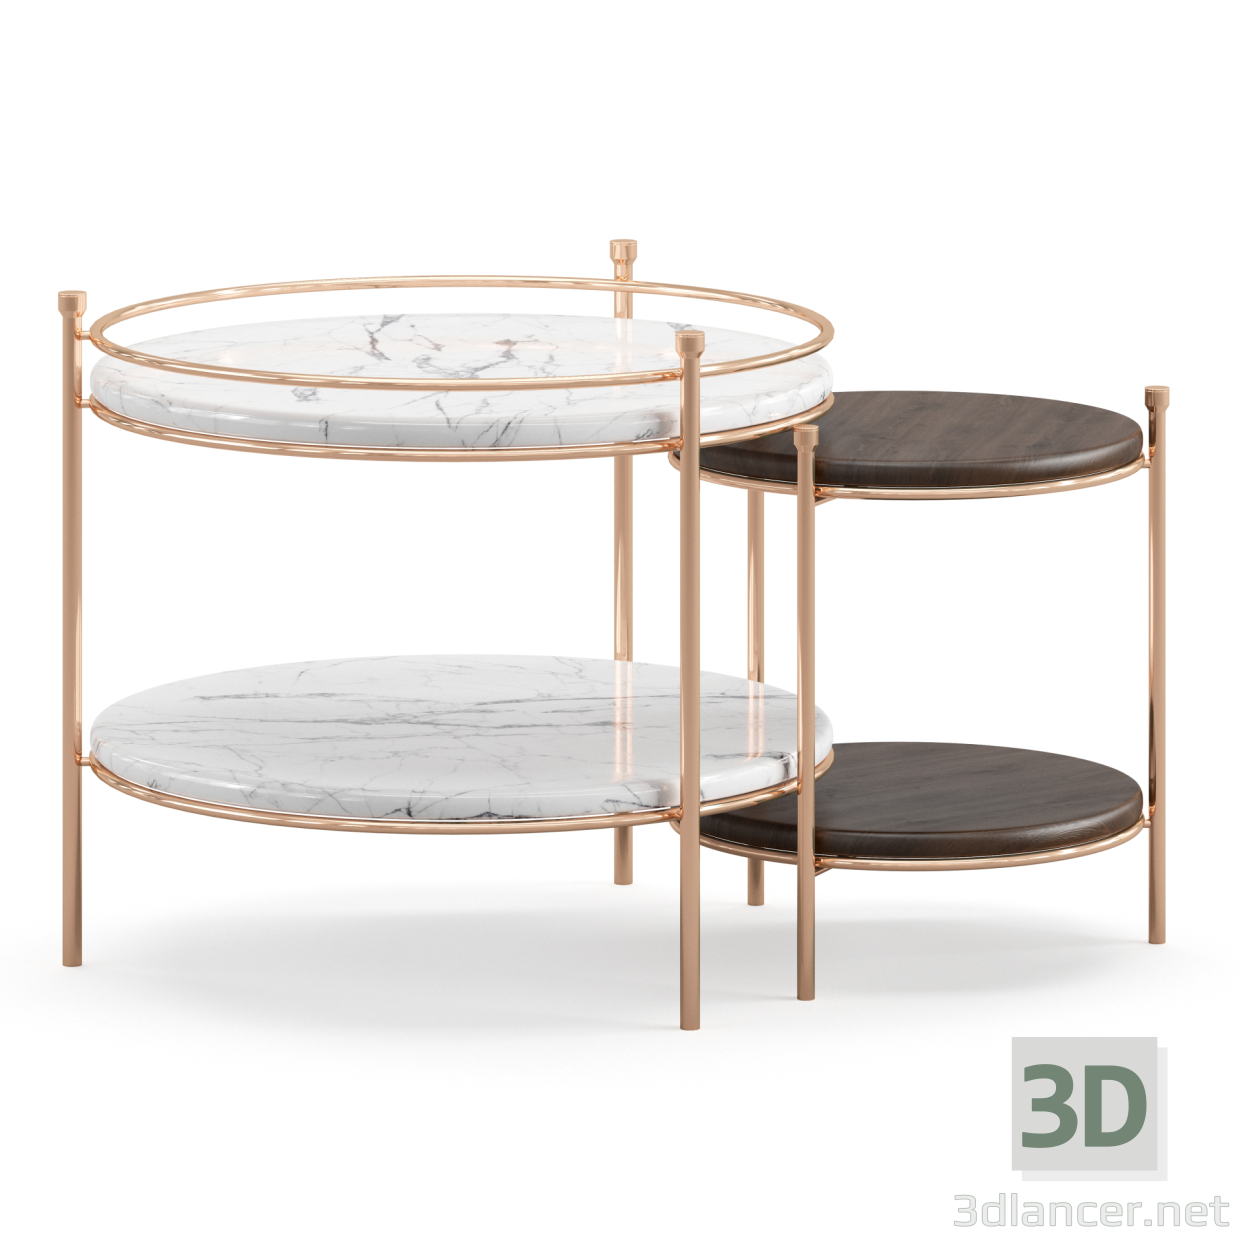 3 डी एर्नी साइड टेबल बड़ा और छोटा मॉडल खरीद - रेंडर